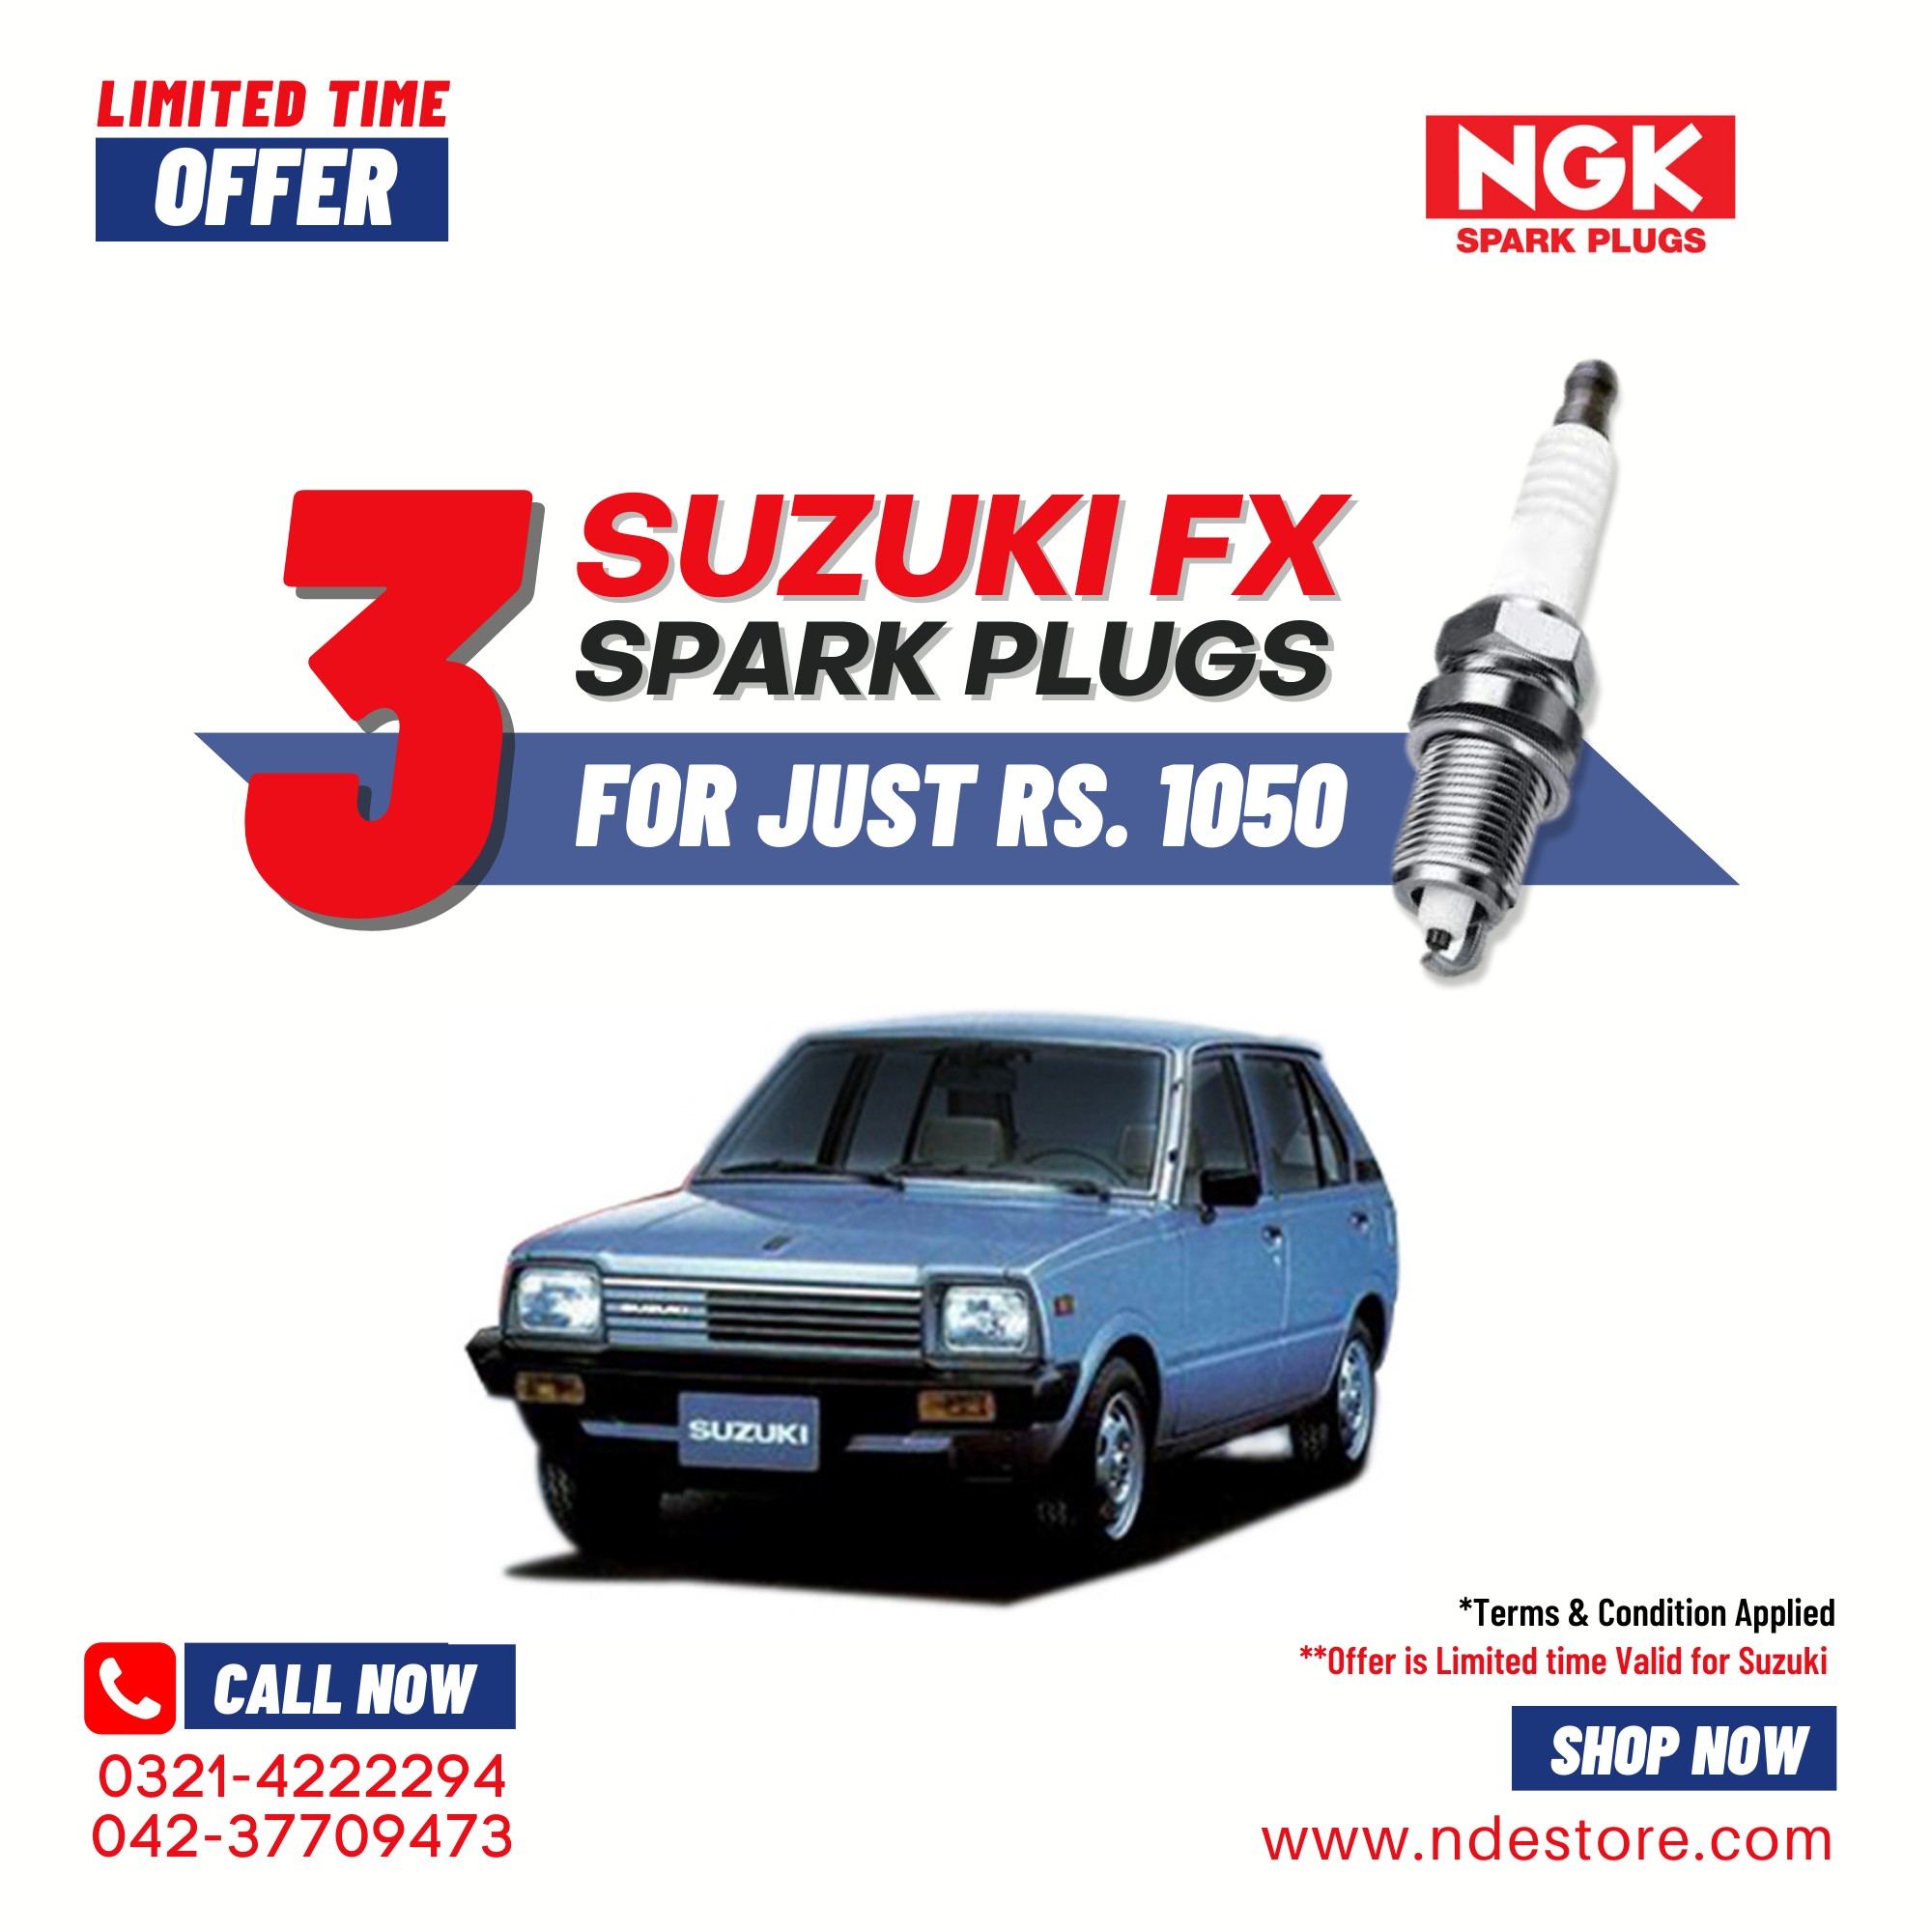 SPARK PLUG NGK FOR SUZUKI FX (3 PIECES)